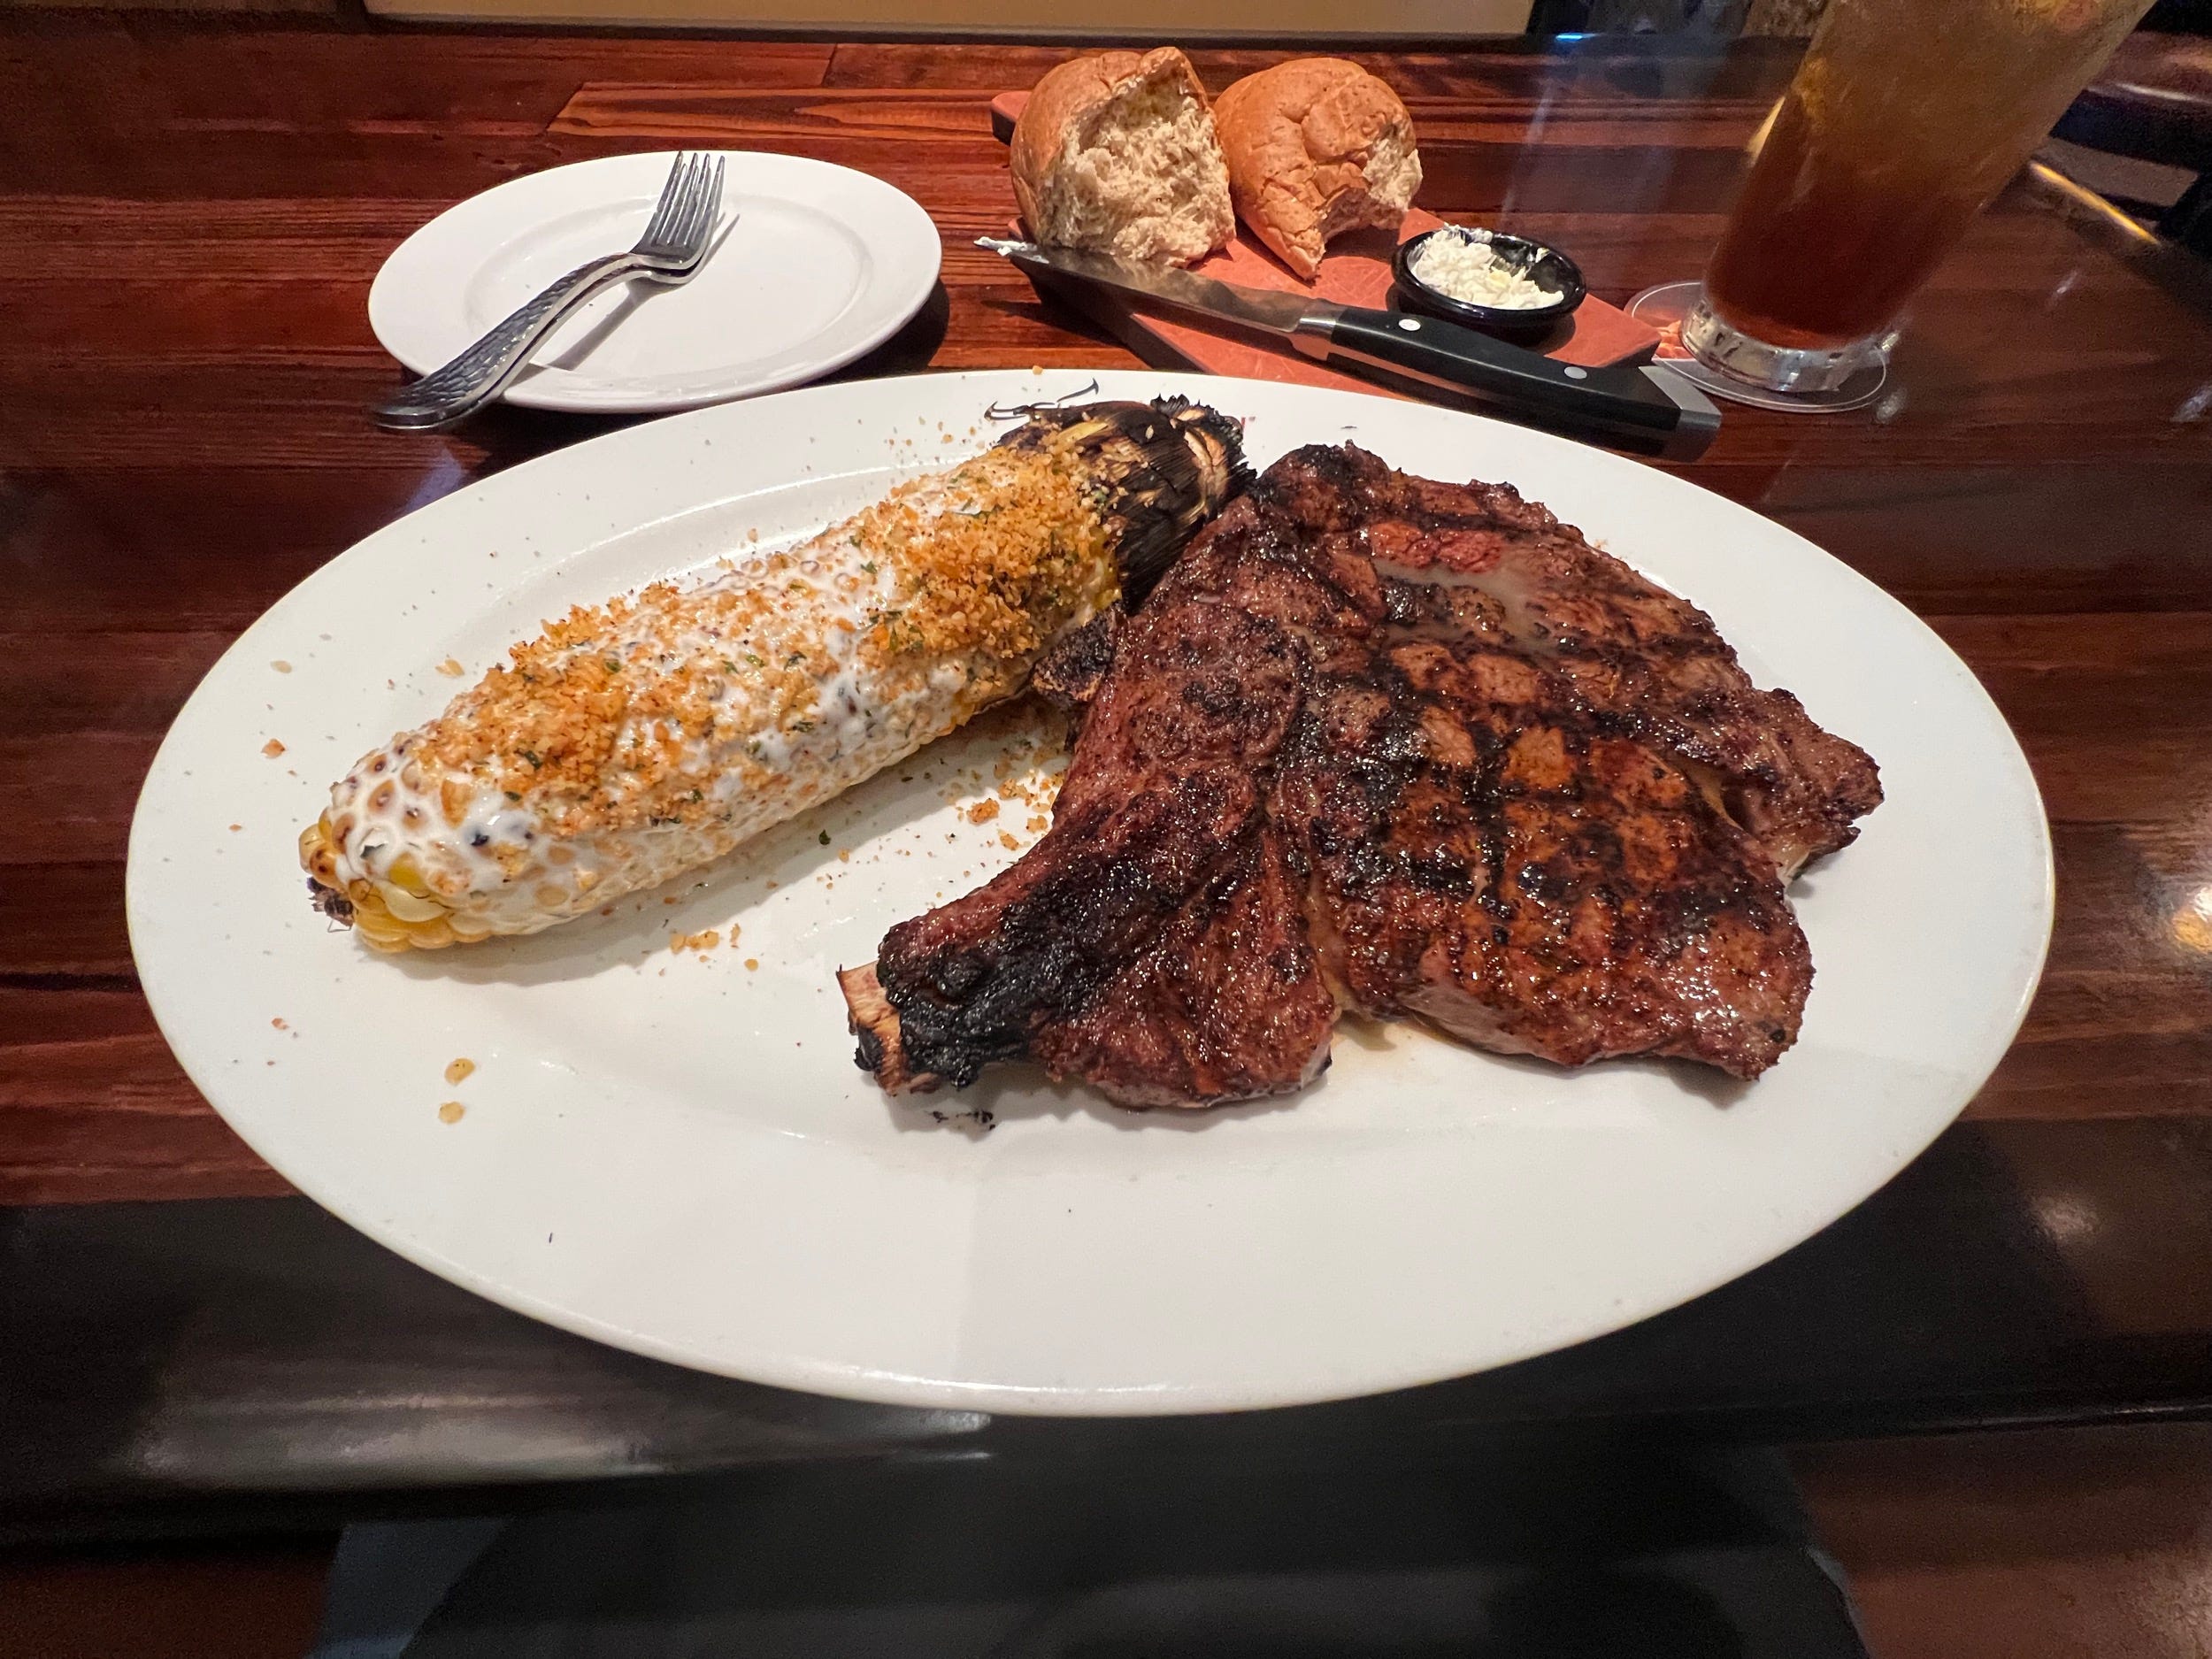 Ein Longhorn Steakhouse-Ribeye mit Knochen und einer Beilage Maiskolben